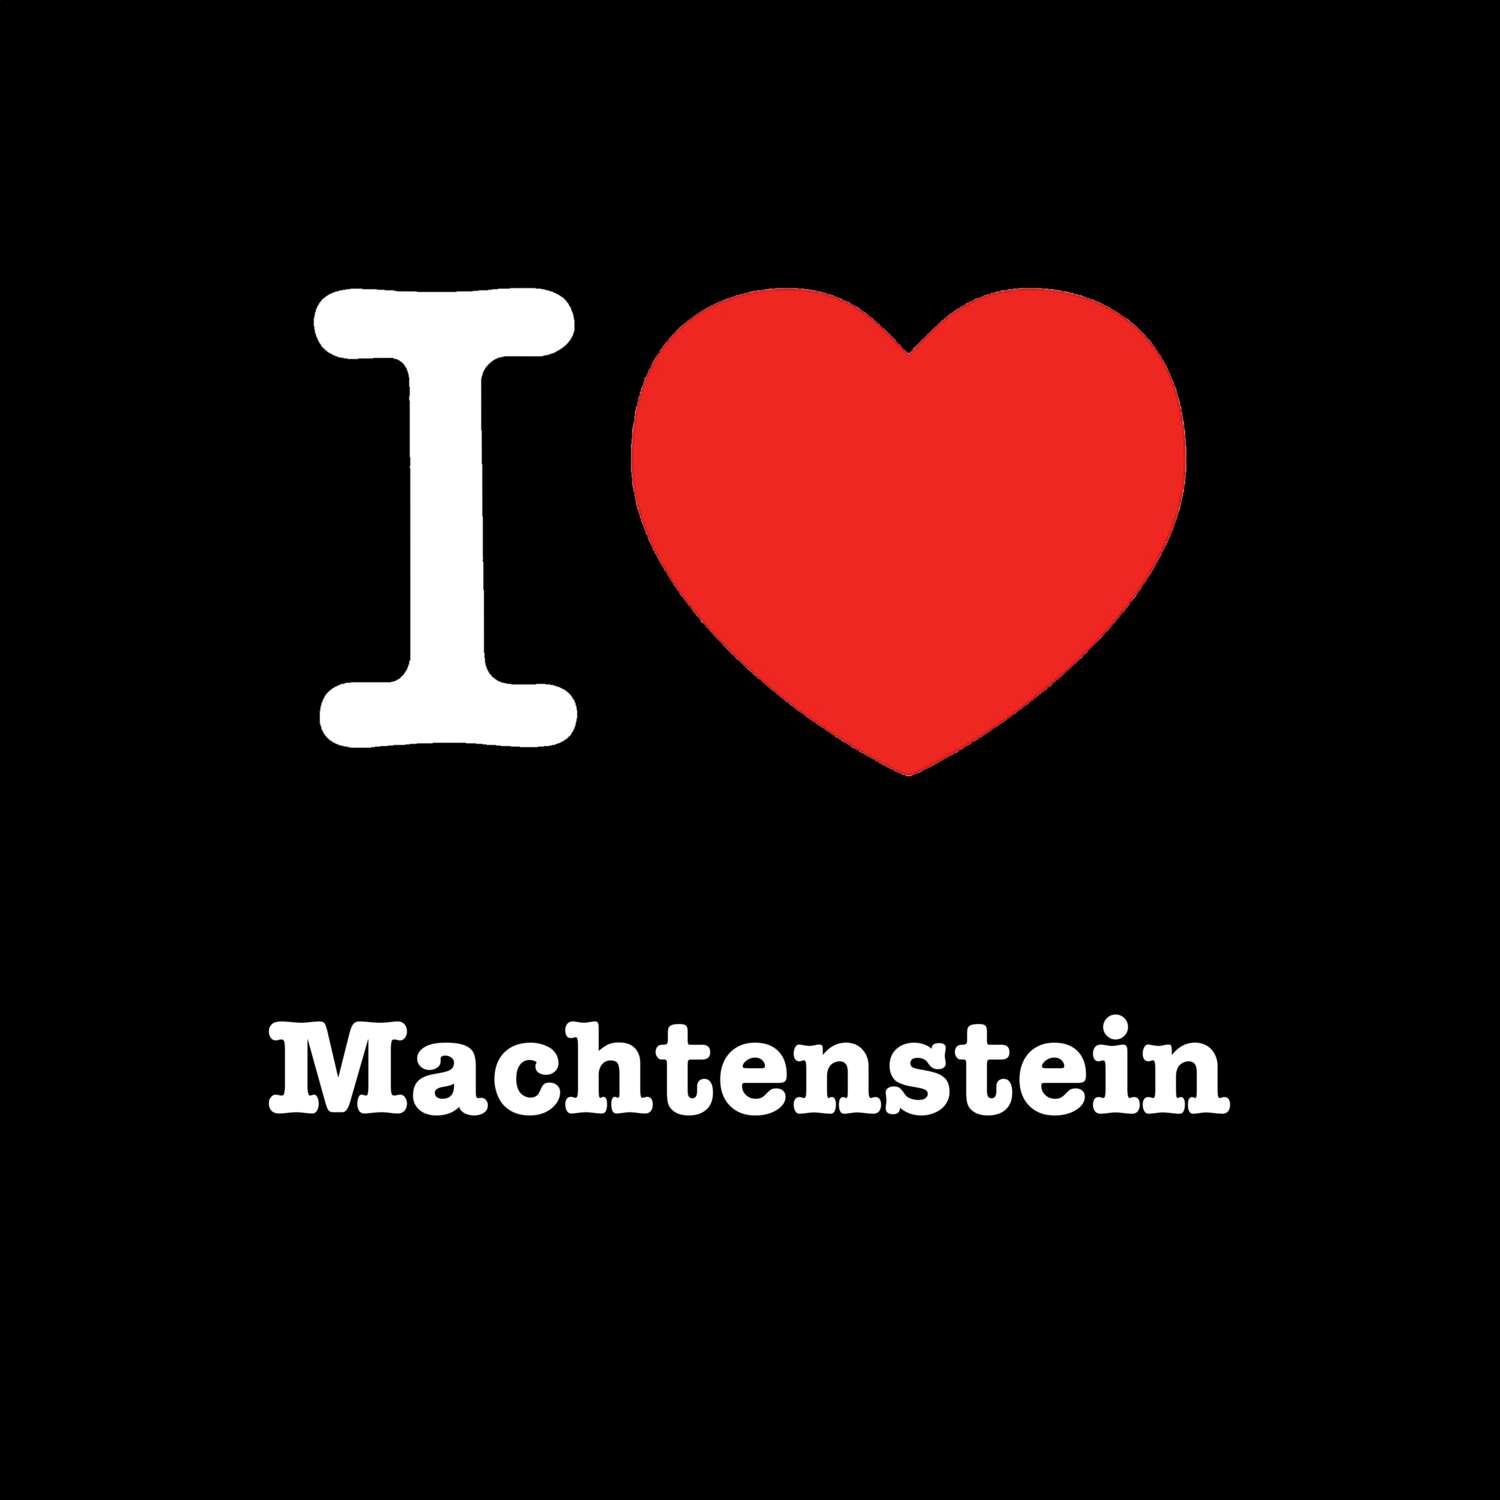 Machtenstein T-Shirt »I love«